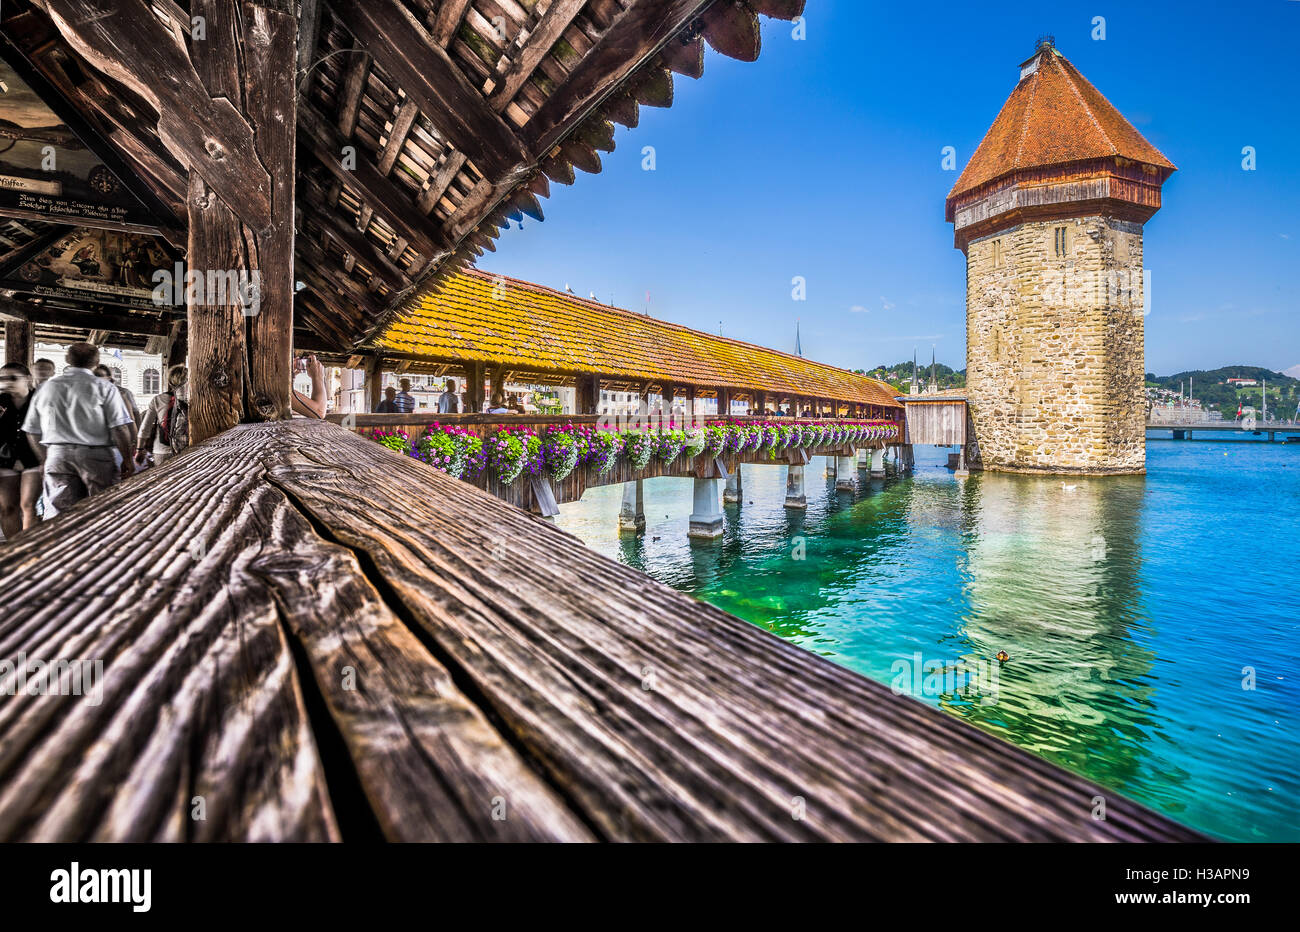 Centro storico della città di Lucerna con il famoso Ponte della Cappella, la città di principale attrazione turistica, in estate, Svizzera Foto Stock